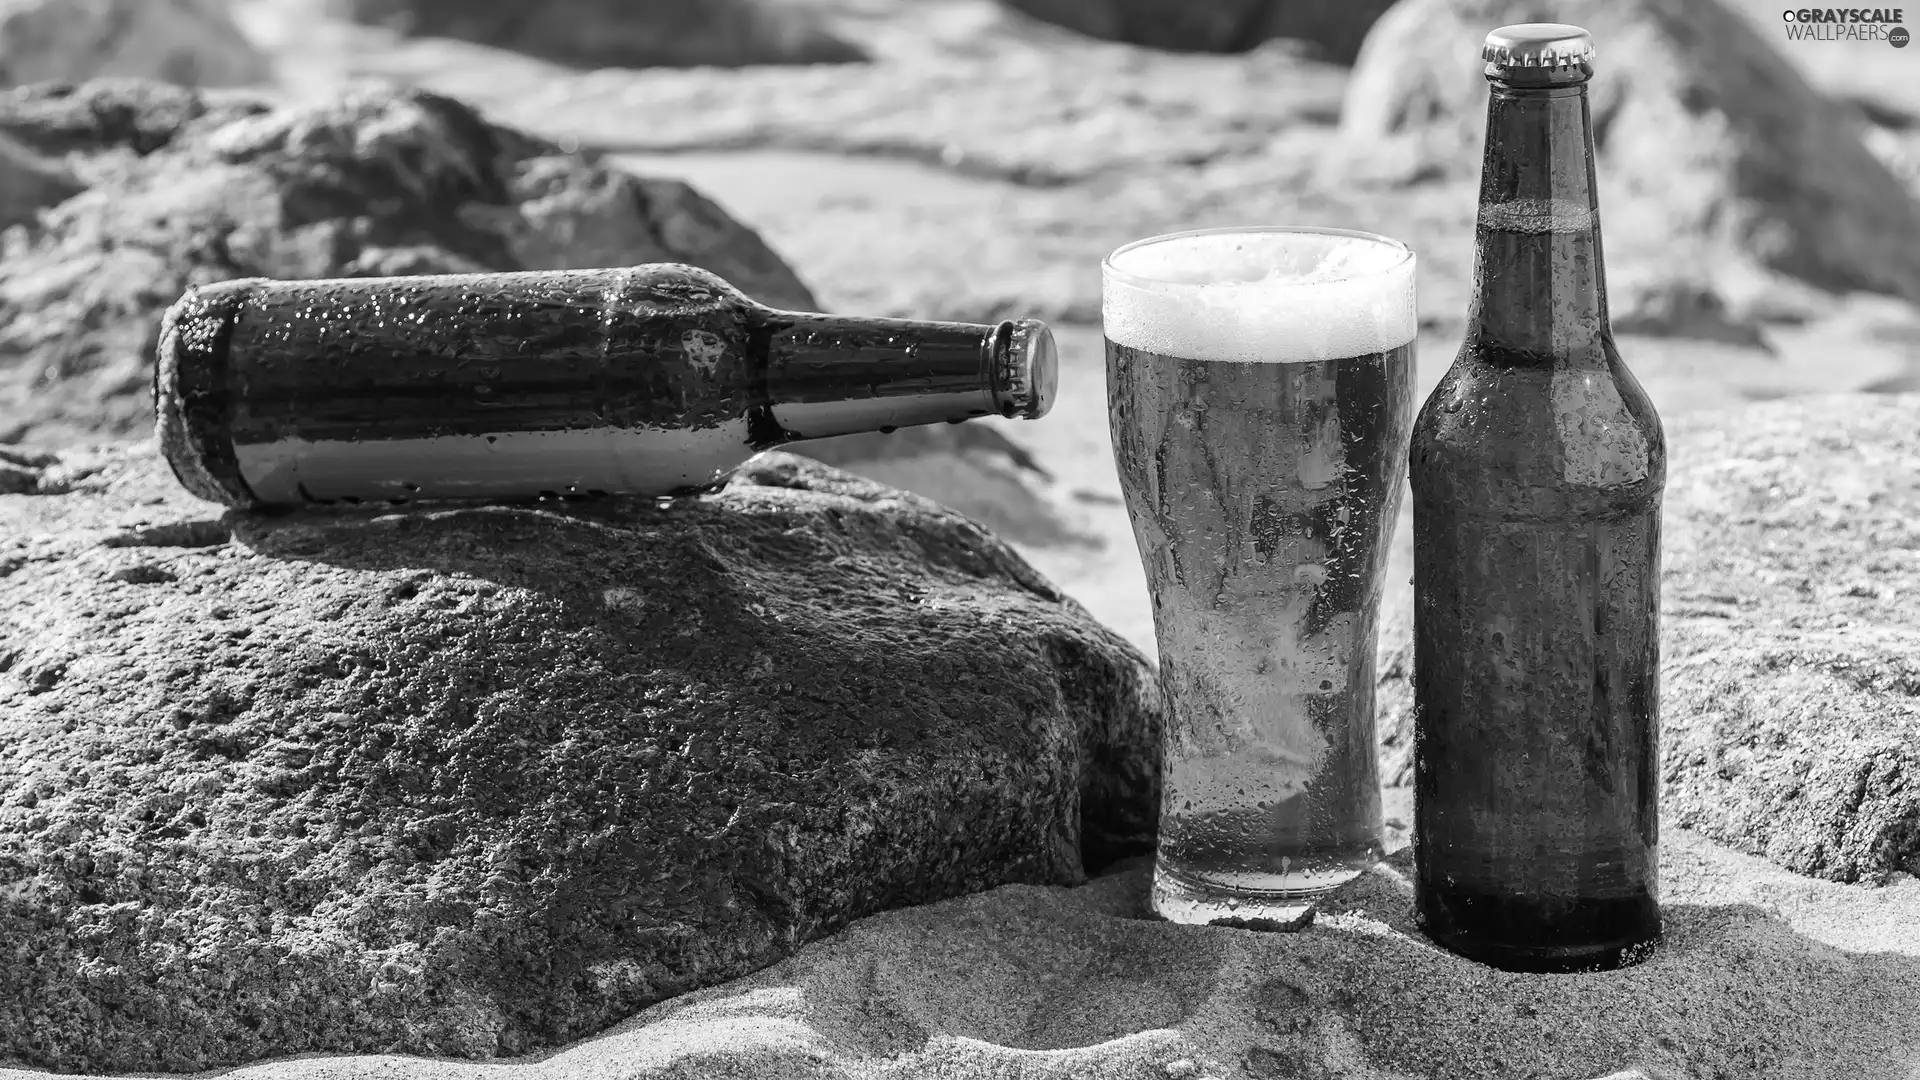 Stones, Sand, Bottles, cup, Beer